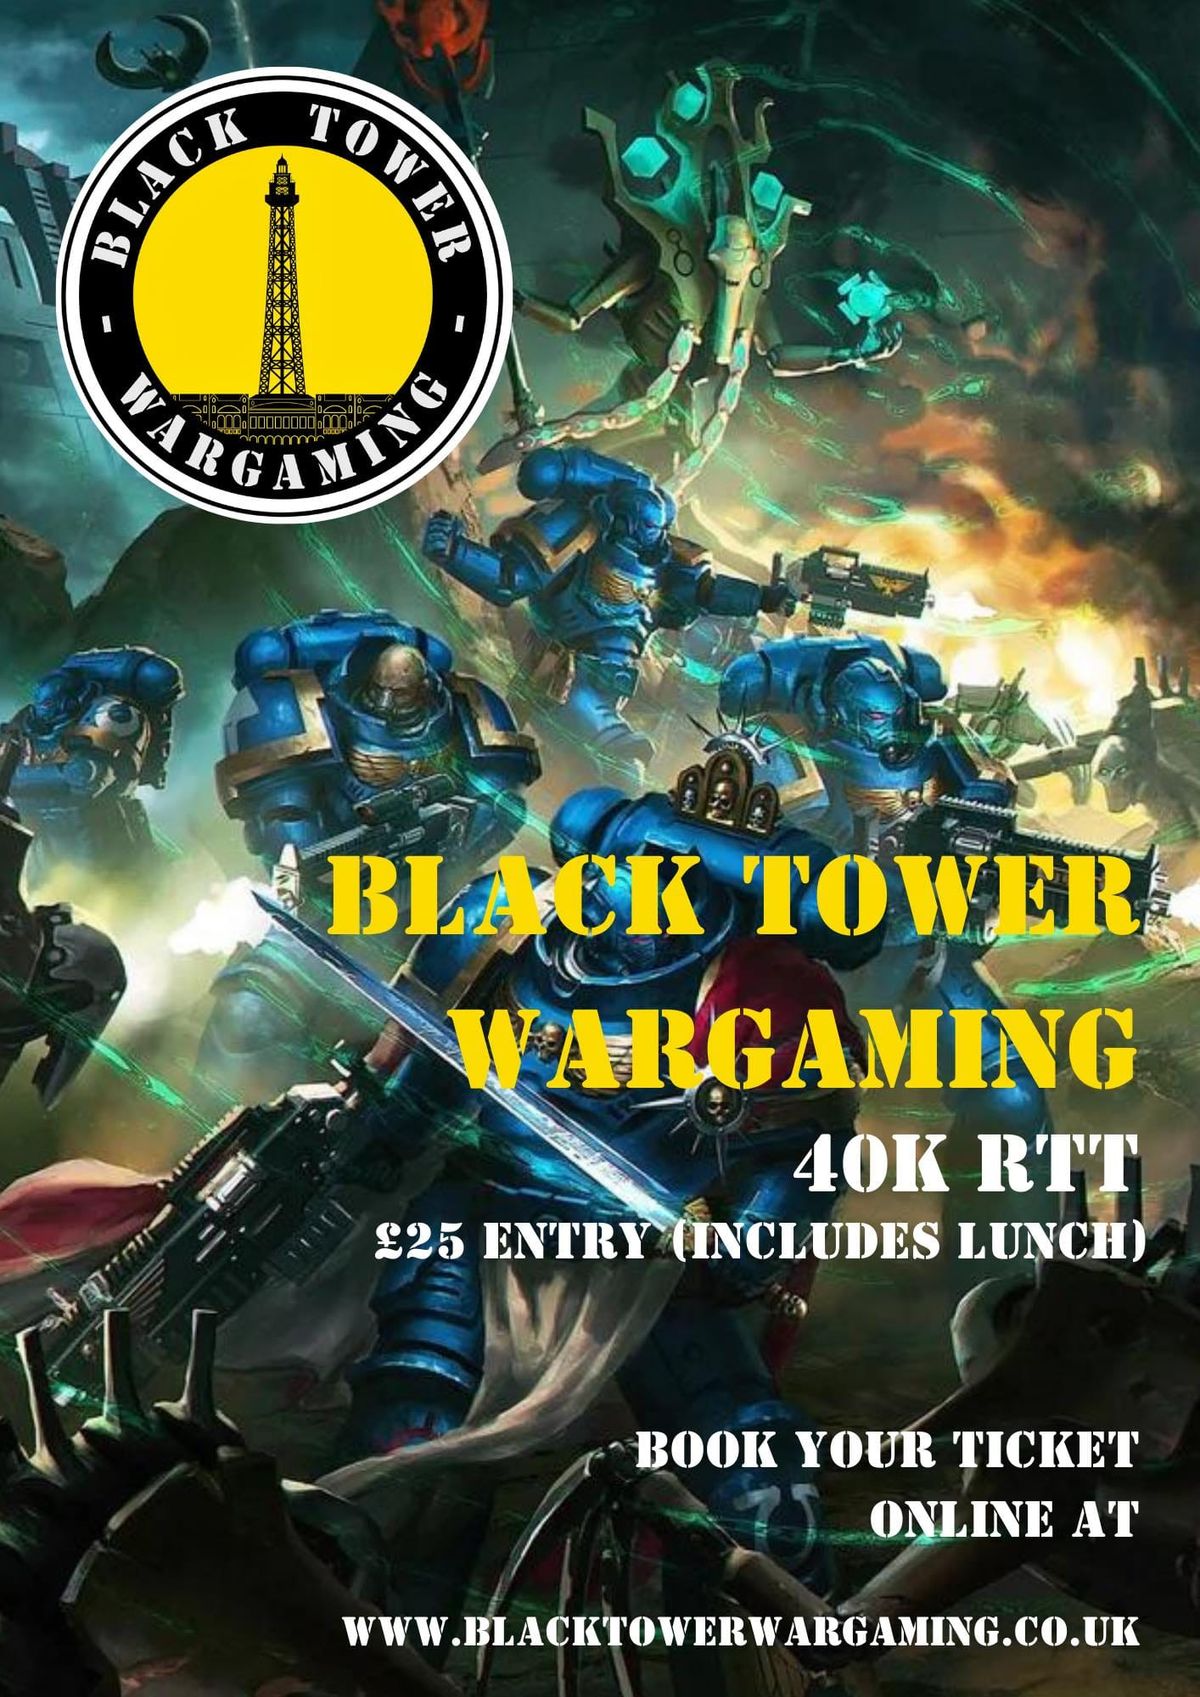 Black Tower Wargaming July Warhammer 40k RTT